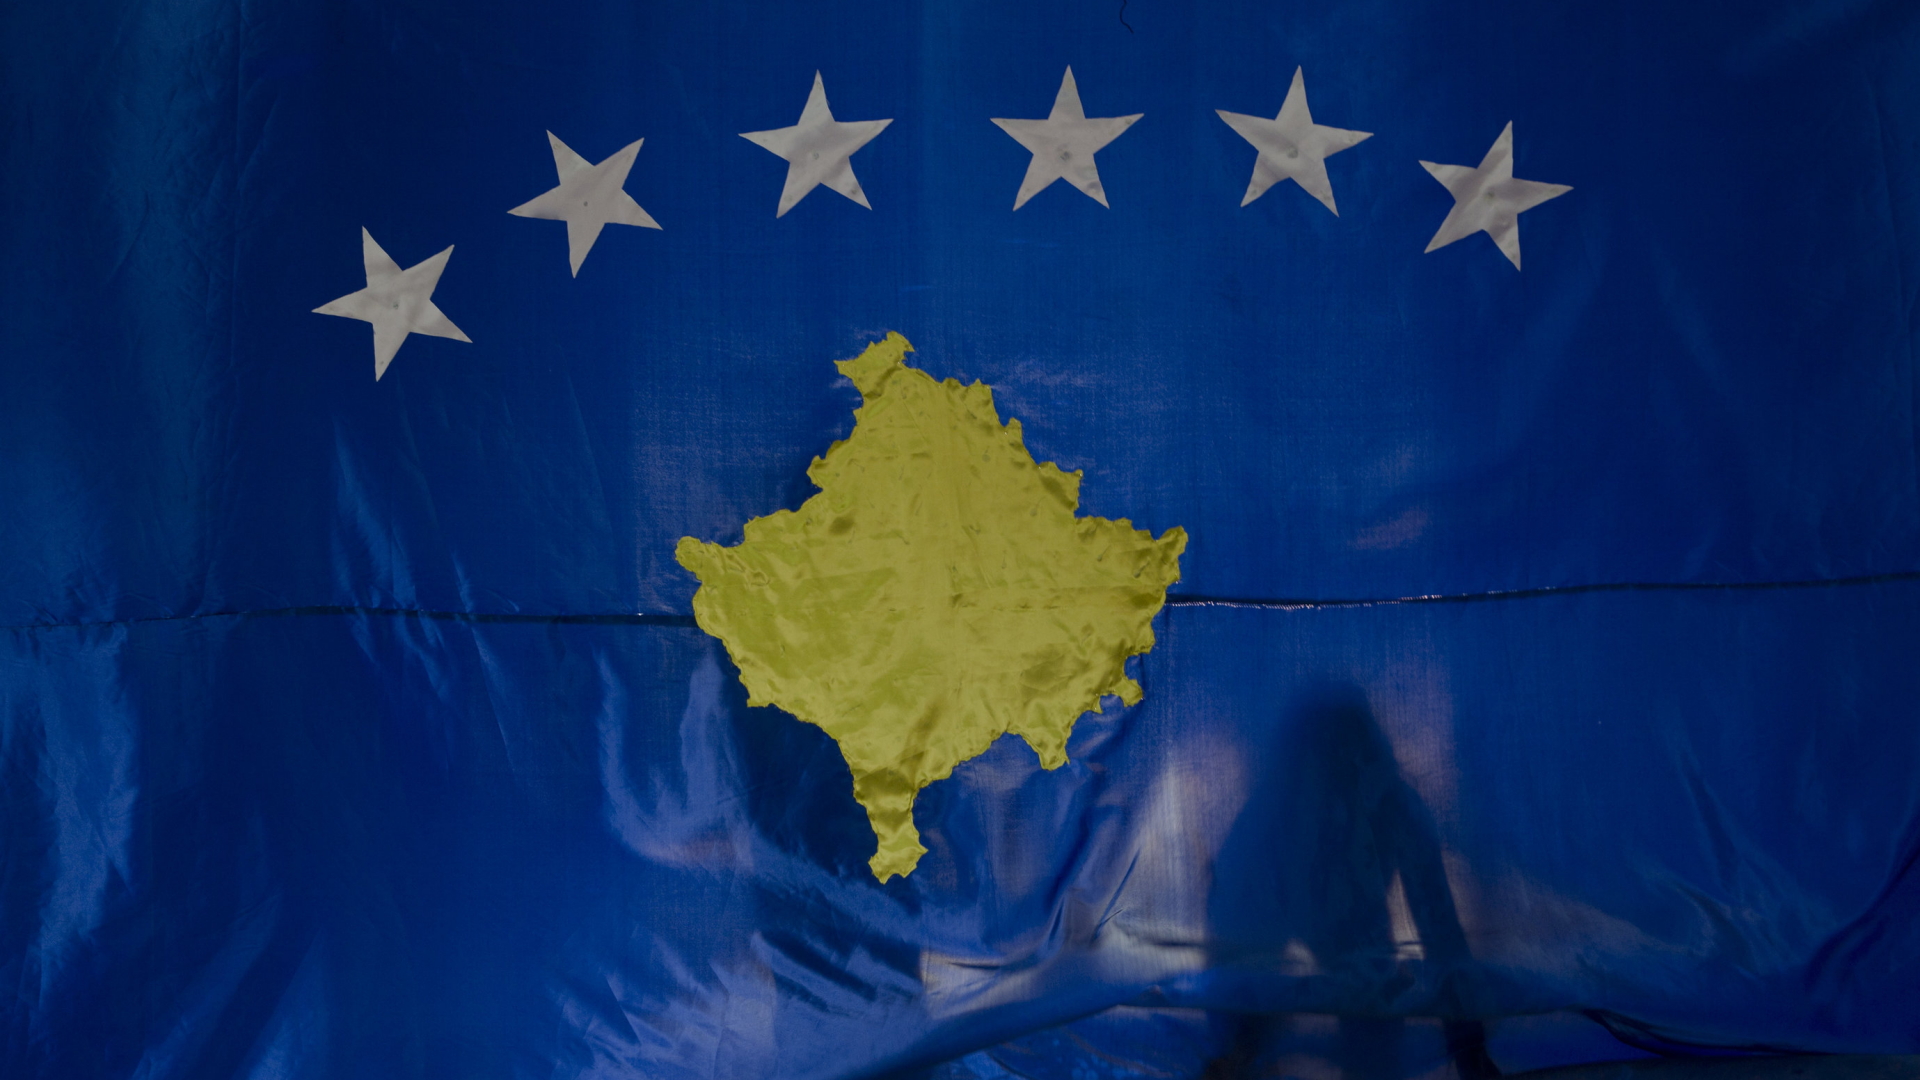 Umriss des Kosovo auf einer Flagge mit sechs Sternen, stellvertretend für die sechs Balkanländer, die der EU beitreten möchten. | dpa